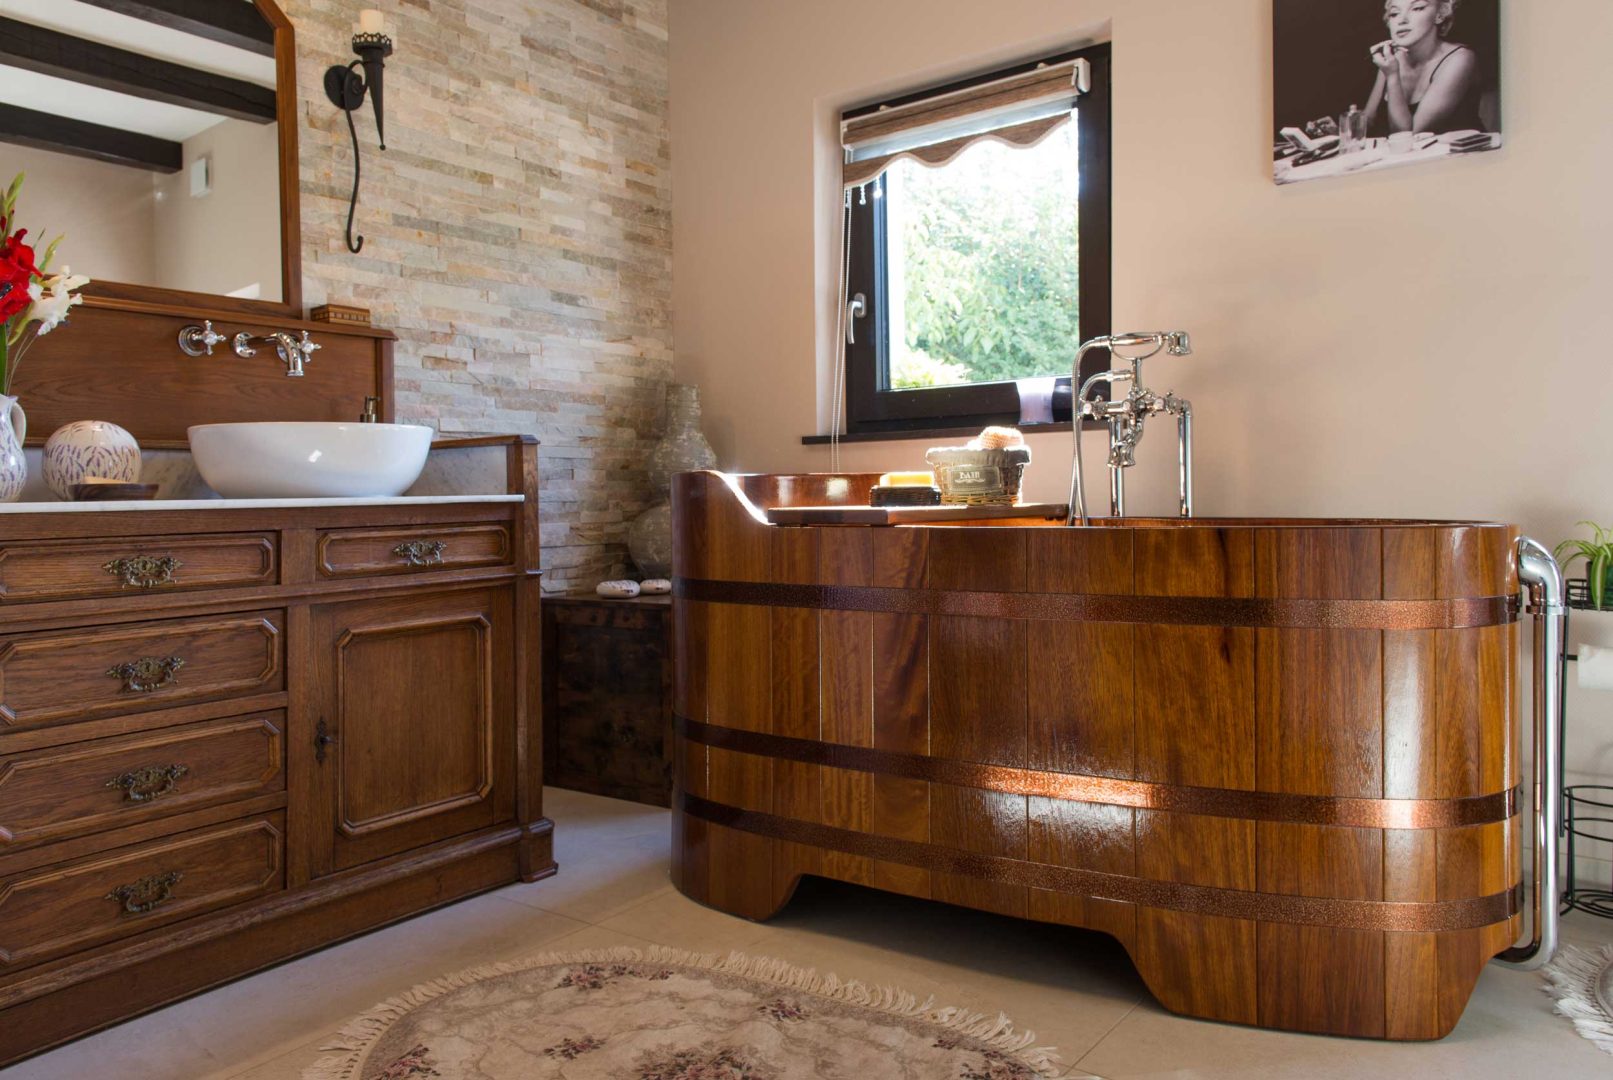 Salle de bain rétro & vintage avec baignoire en bois